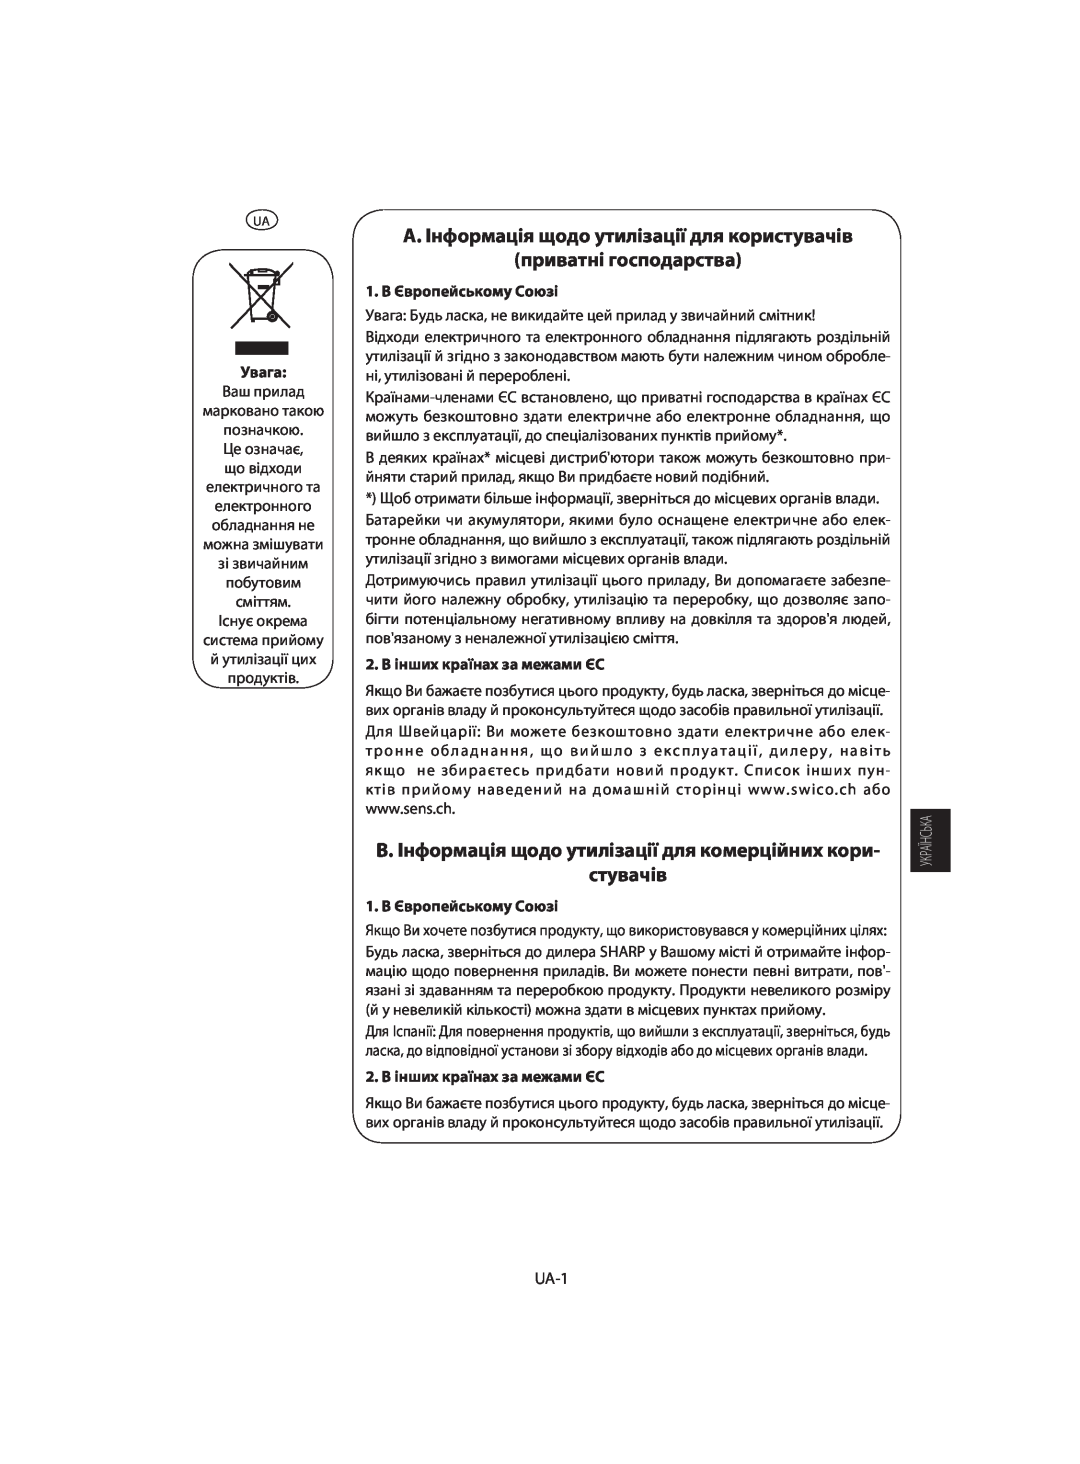 Sharp R-742, R-642 A. Інформація щодо утилізації для користувачів приватні господарства, Увага, 1. В Європейському Союзі 